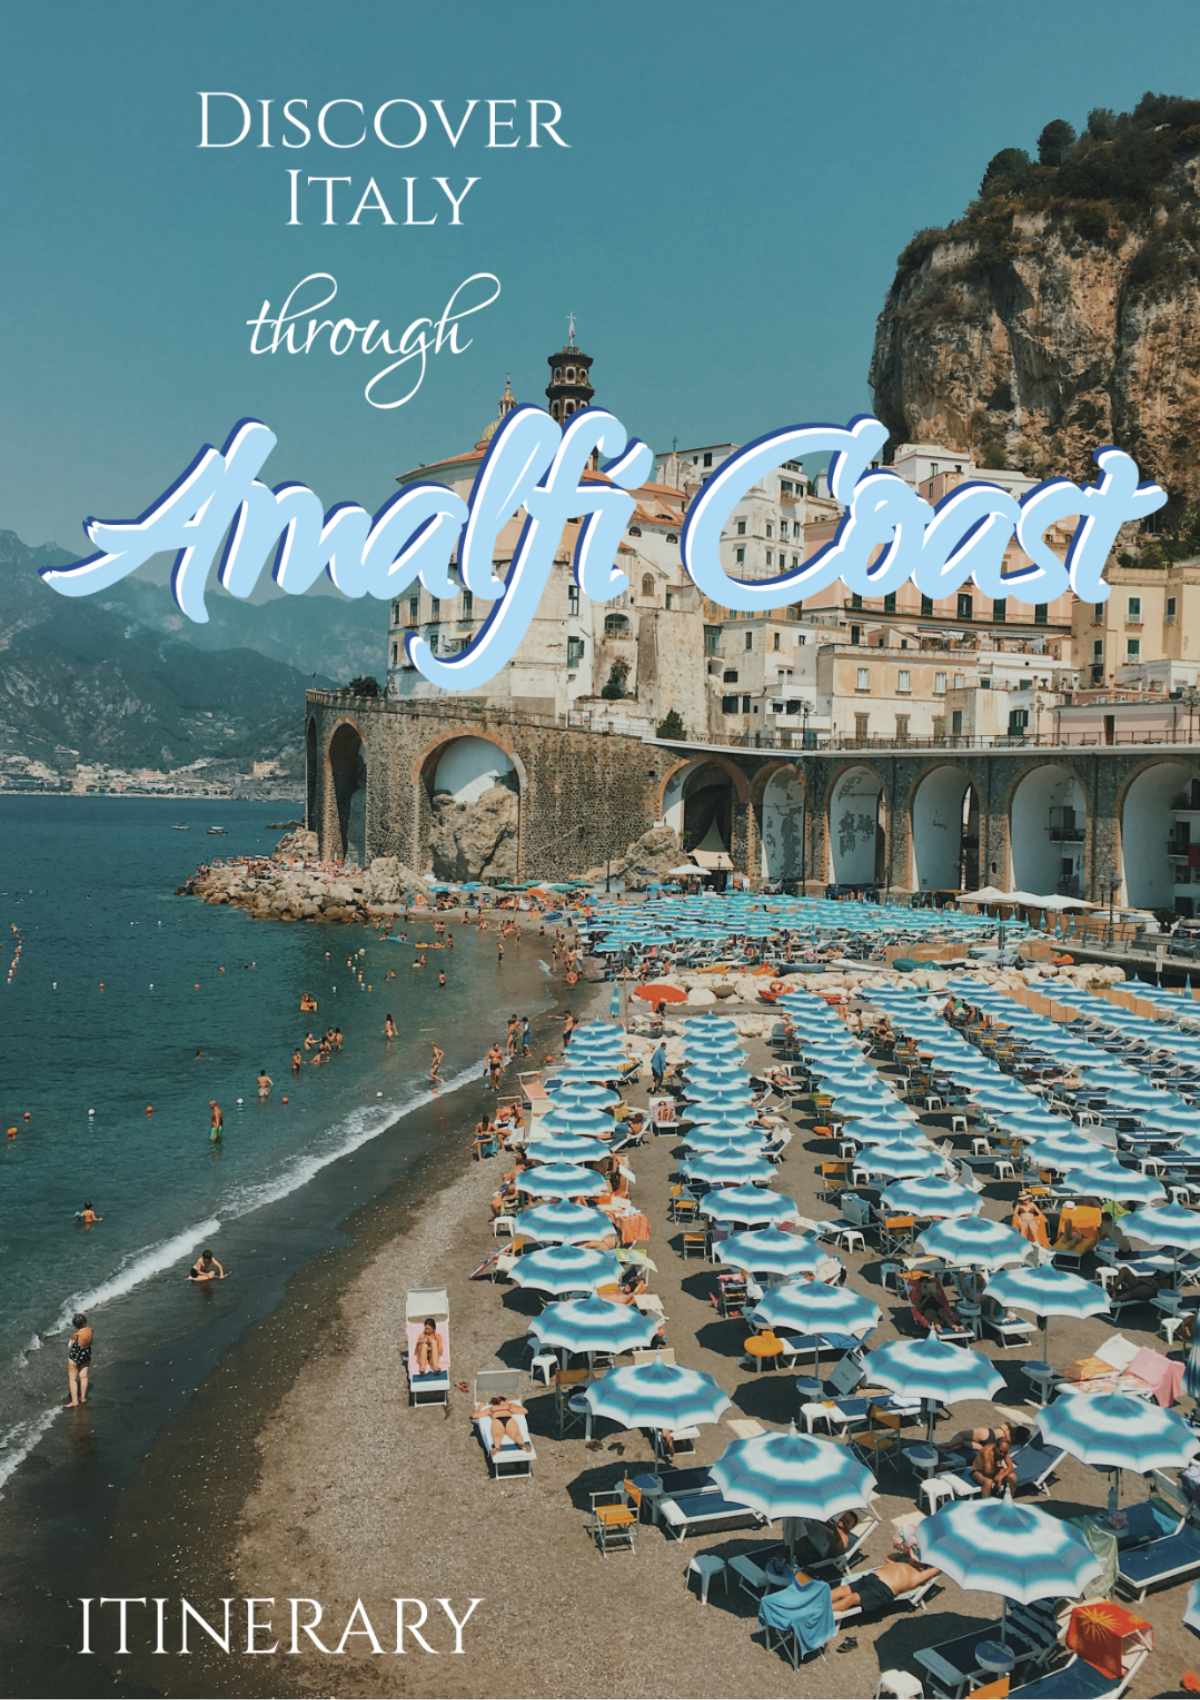 Free 2 Day Amalfi Coast Itinerary Template